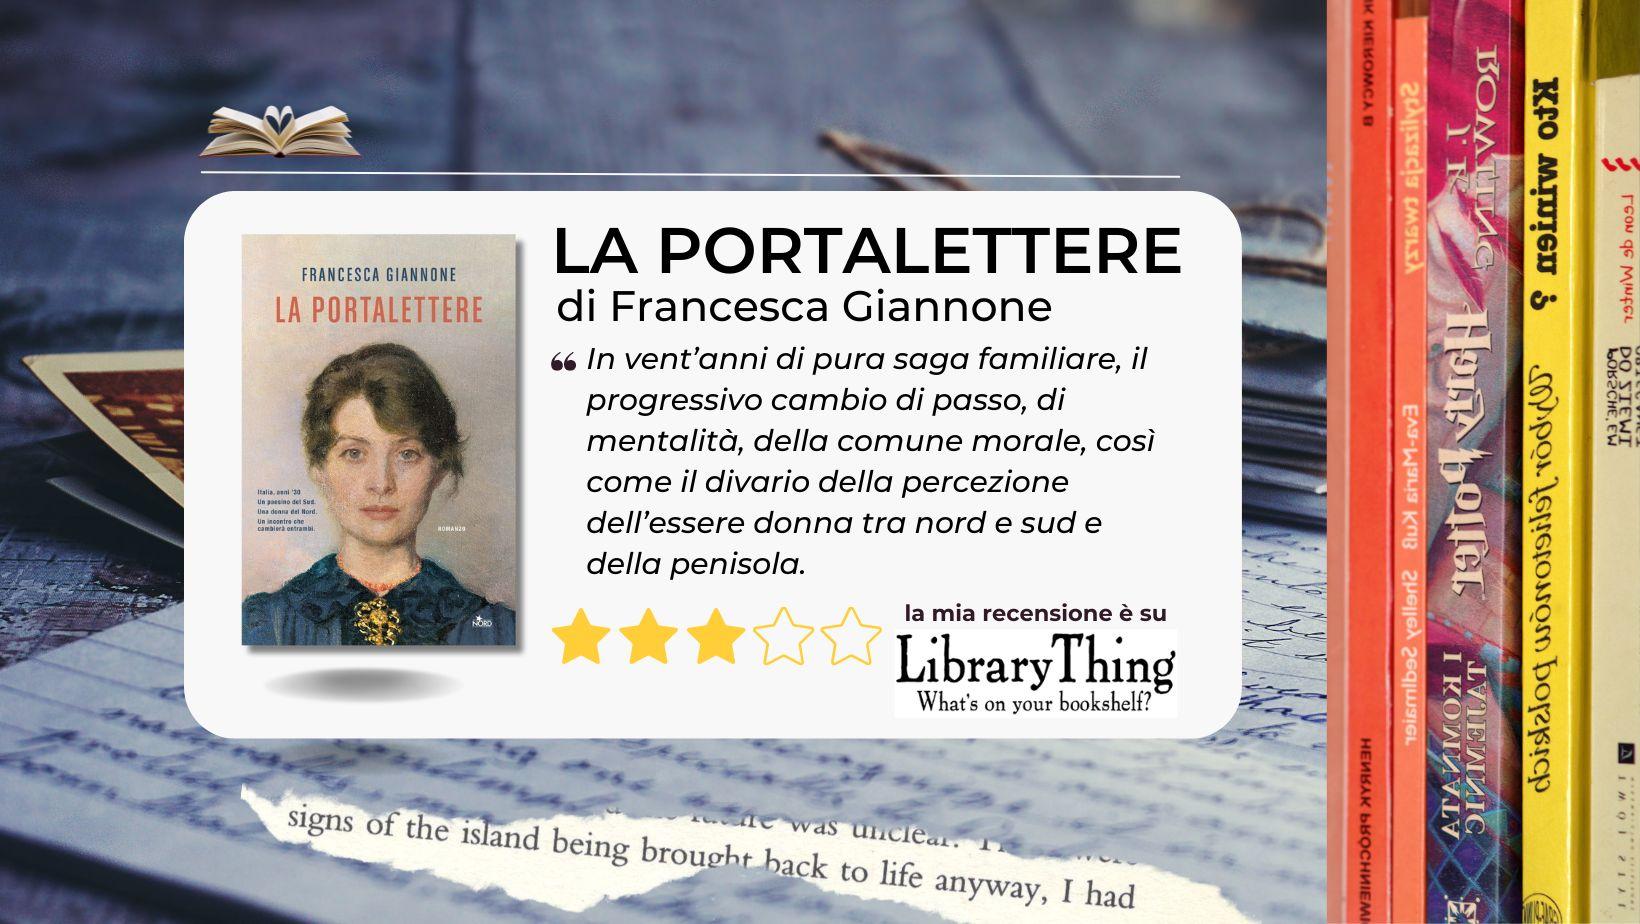 La portalettere di Francesca Giannone nel ricordo di una donna, l'avventura di una vita dove nord e sud s'incontrano